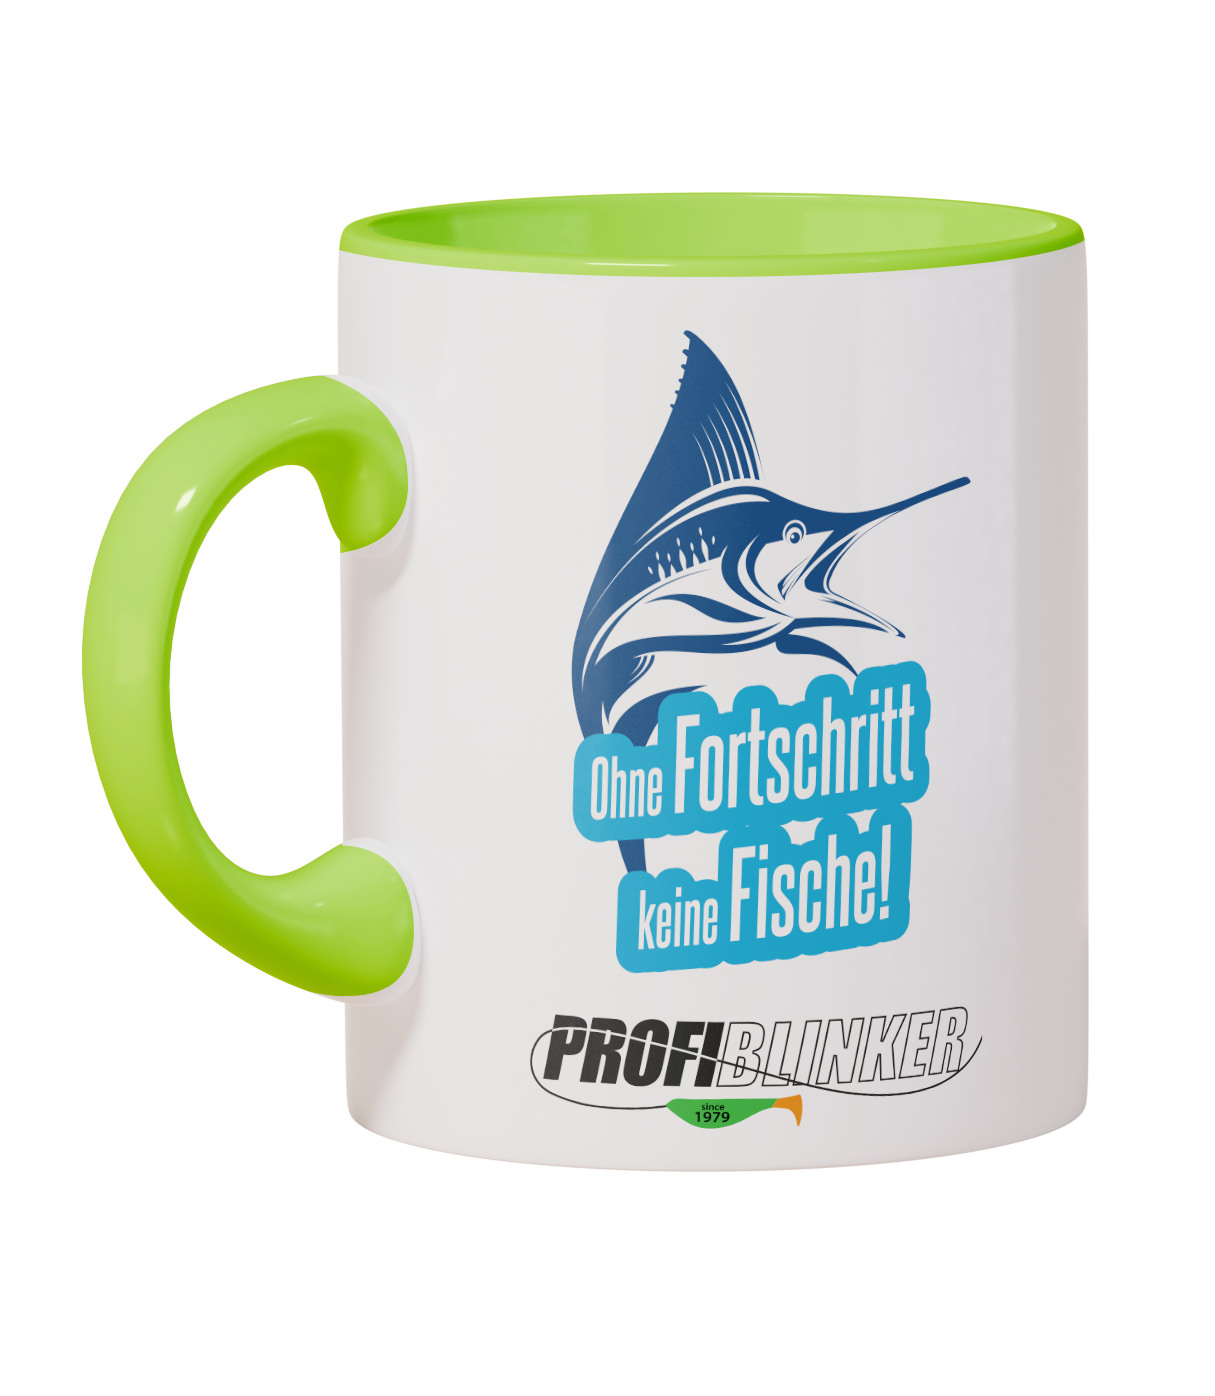 ProfiBlinker Kaffeepott Keramik hellgrün - Motiv ''Ohne Fortschritt keine Fische'' 